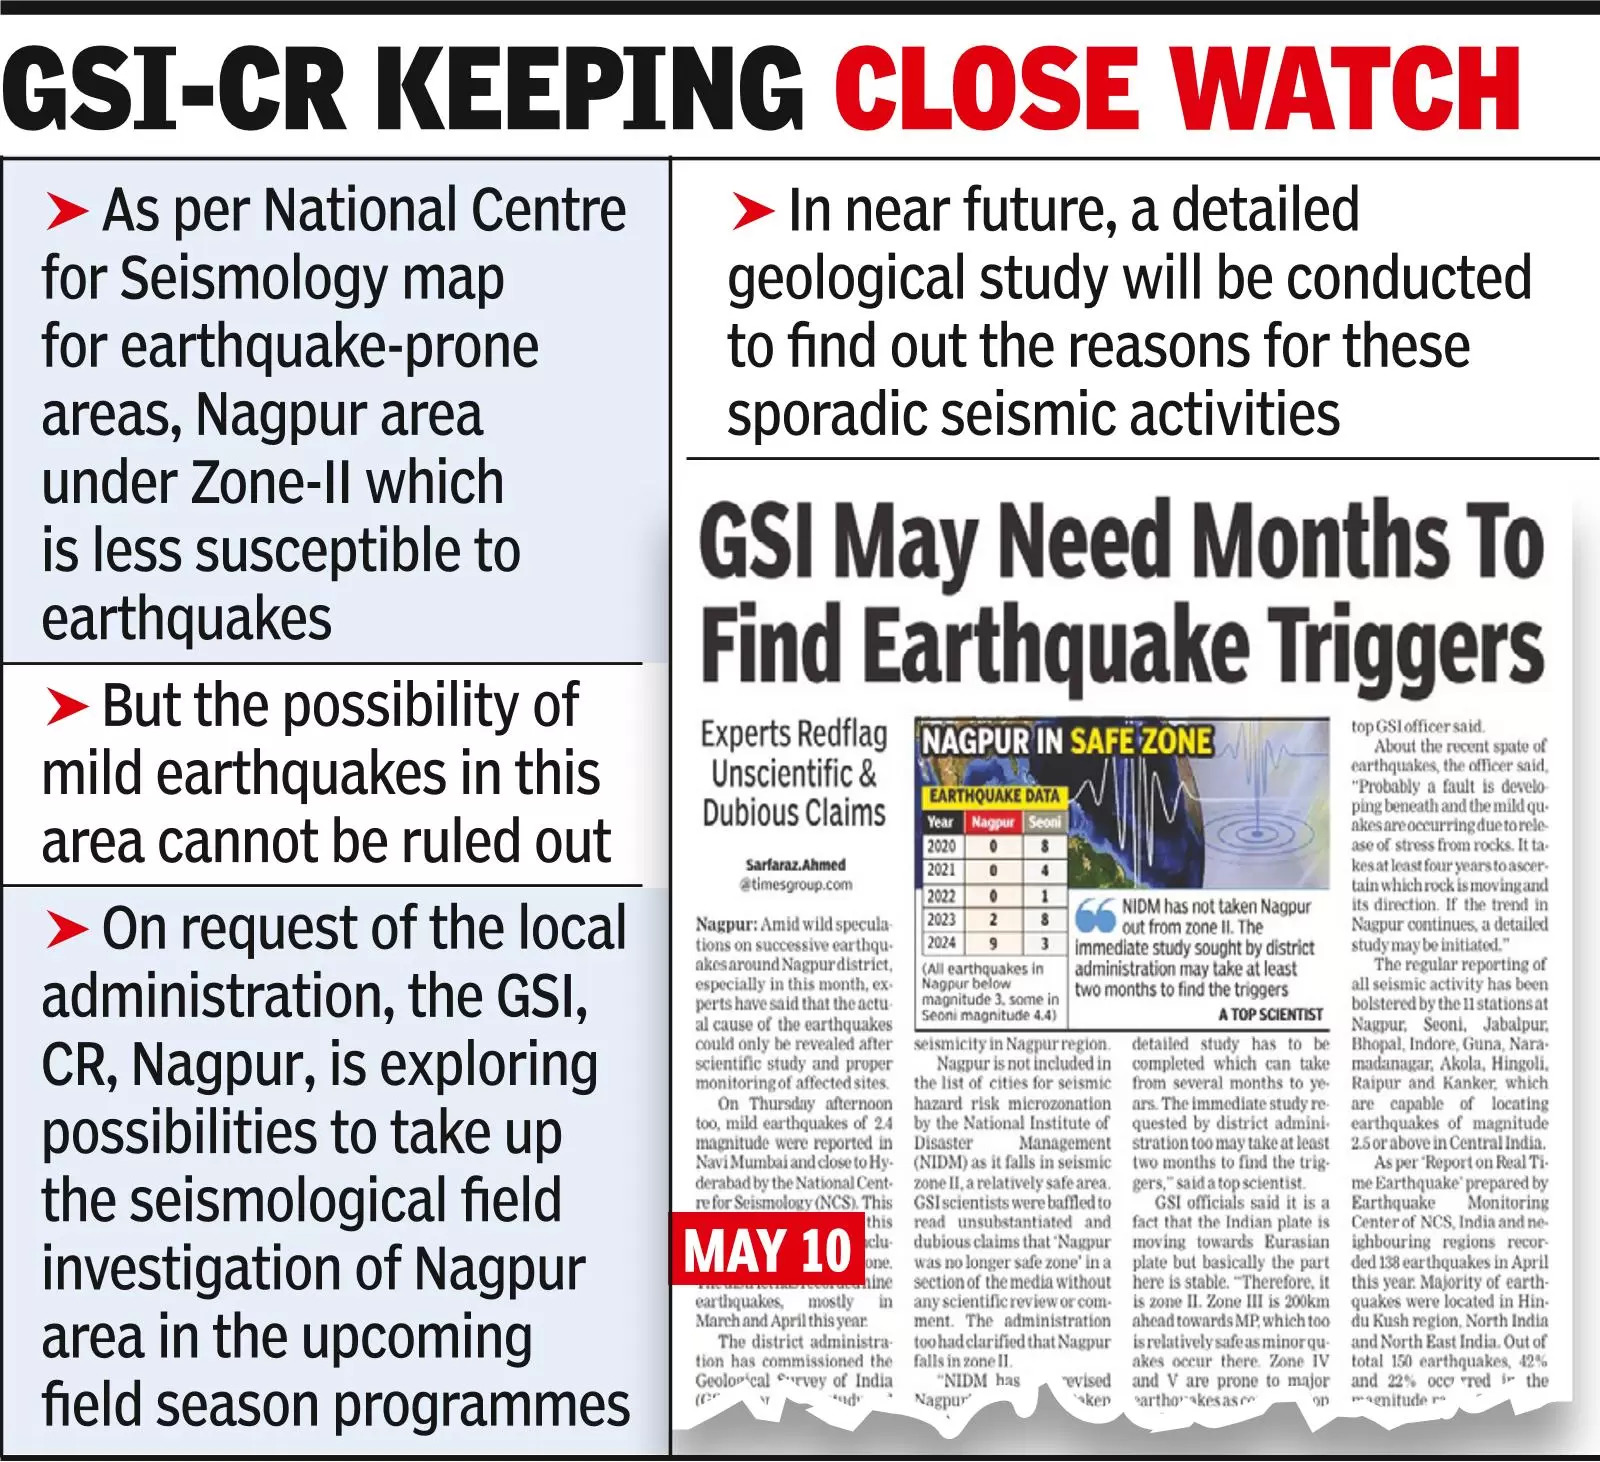 Nagpur safe zone, seismic study soon, reiterates GSI